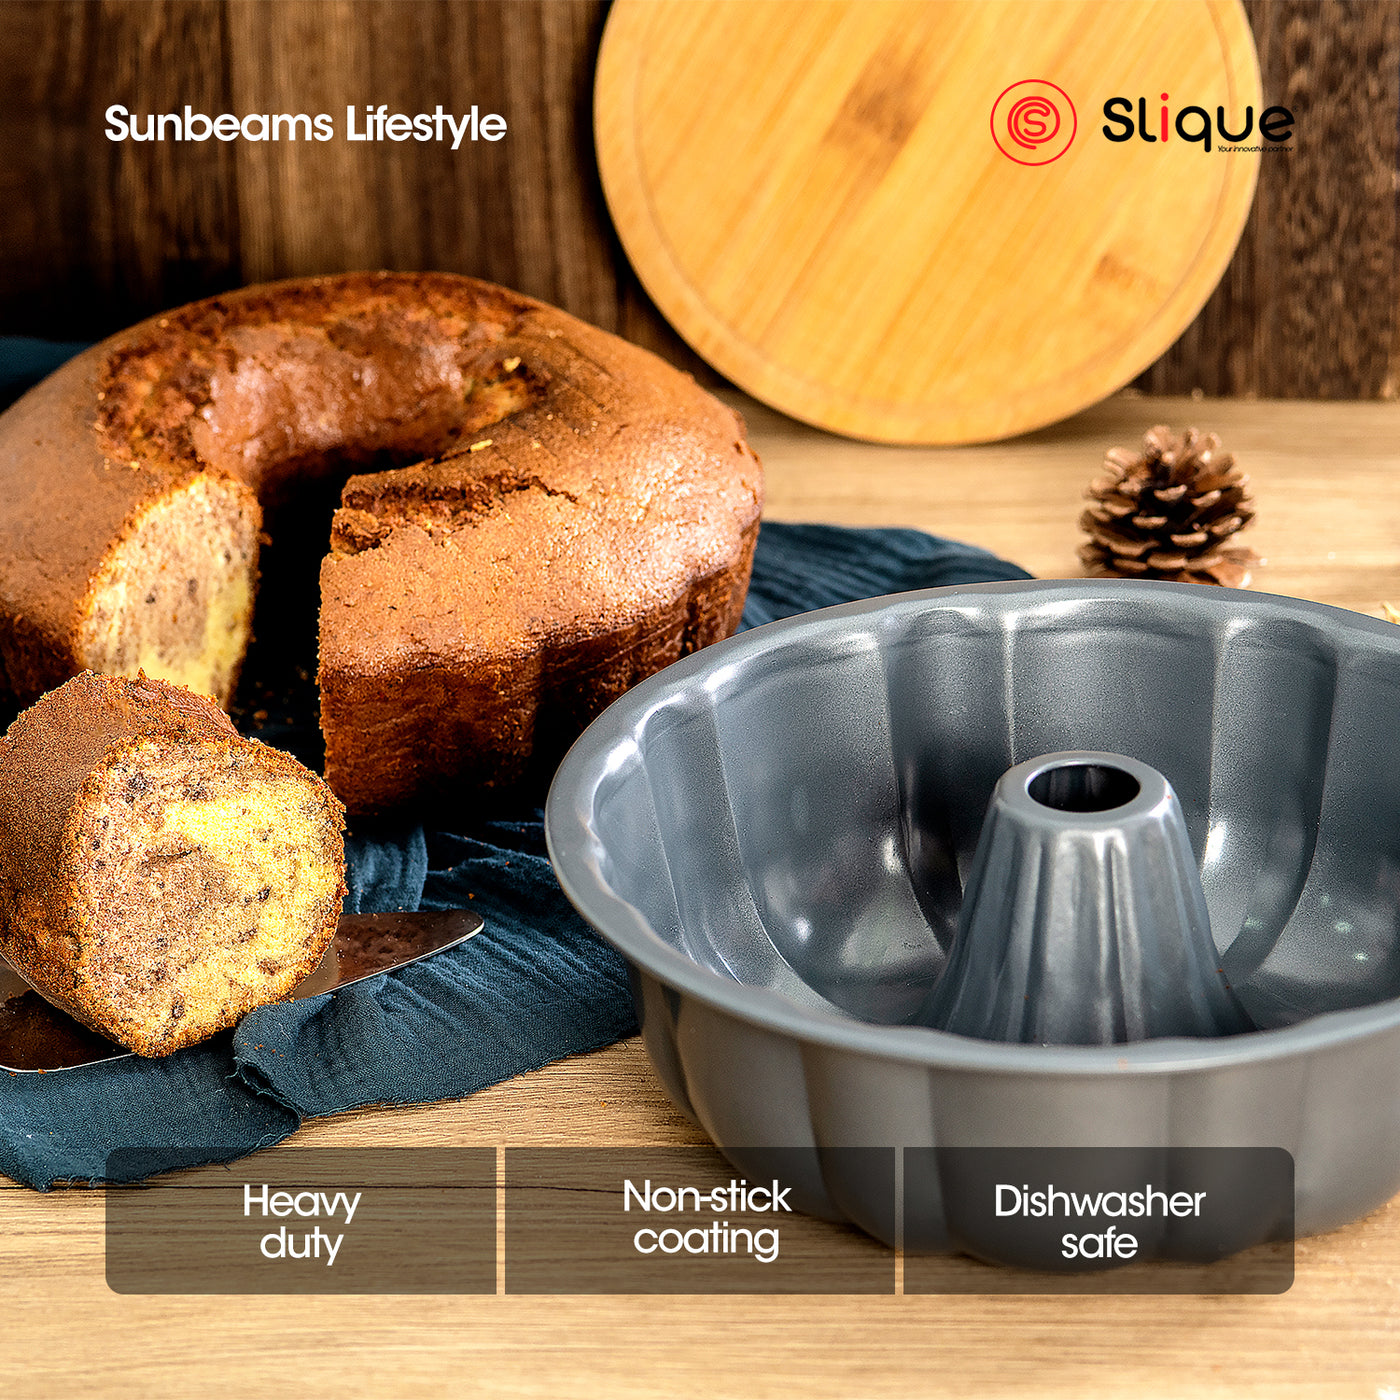 SLIQUE Premium Nonstick Bundin Form Pan (Grey) Oven Safe